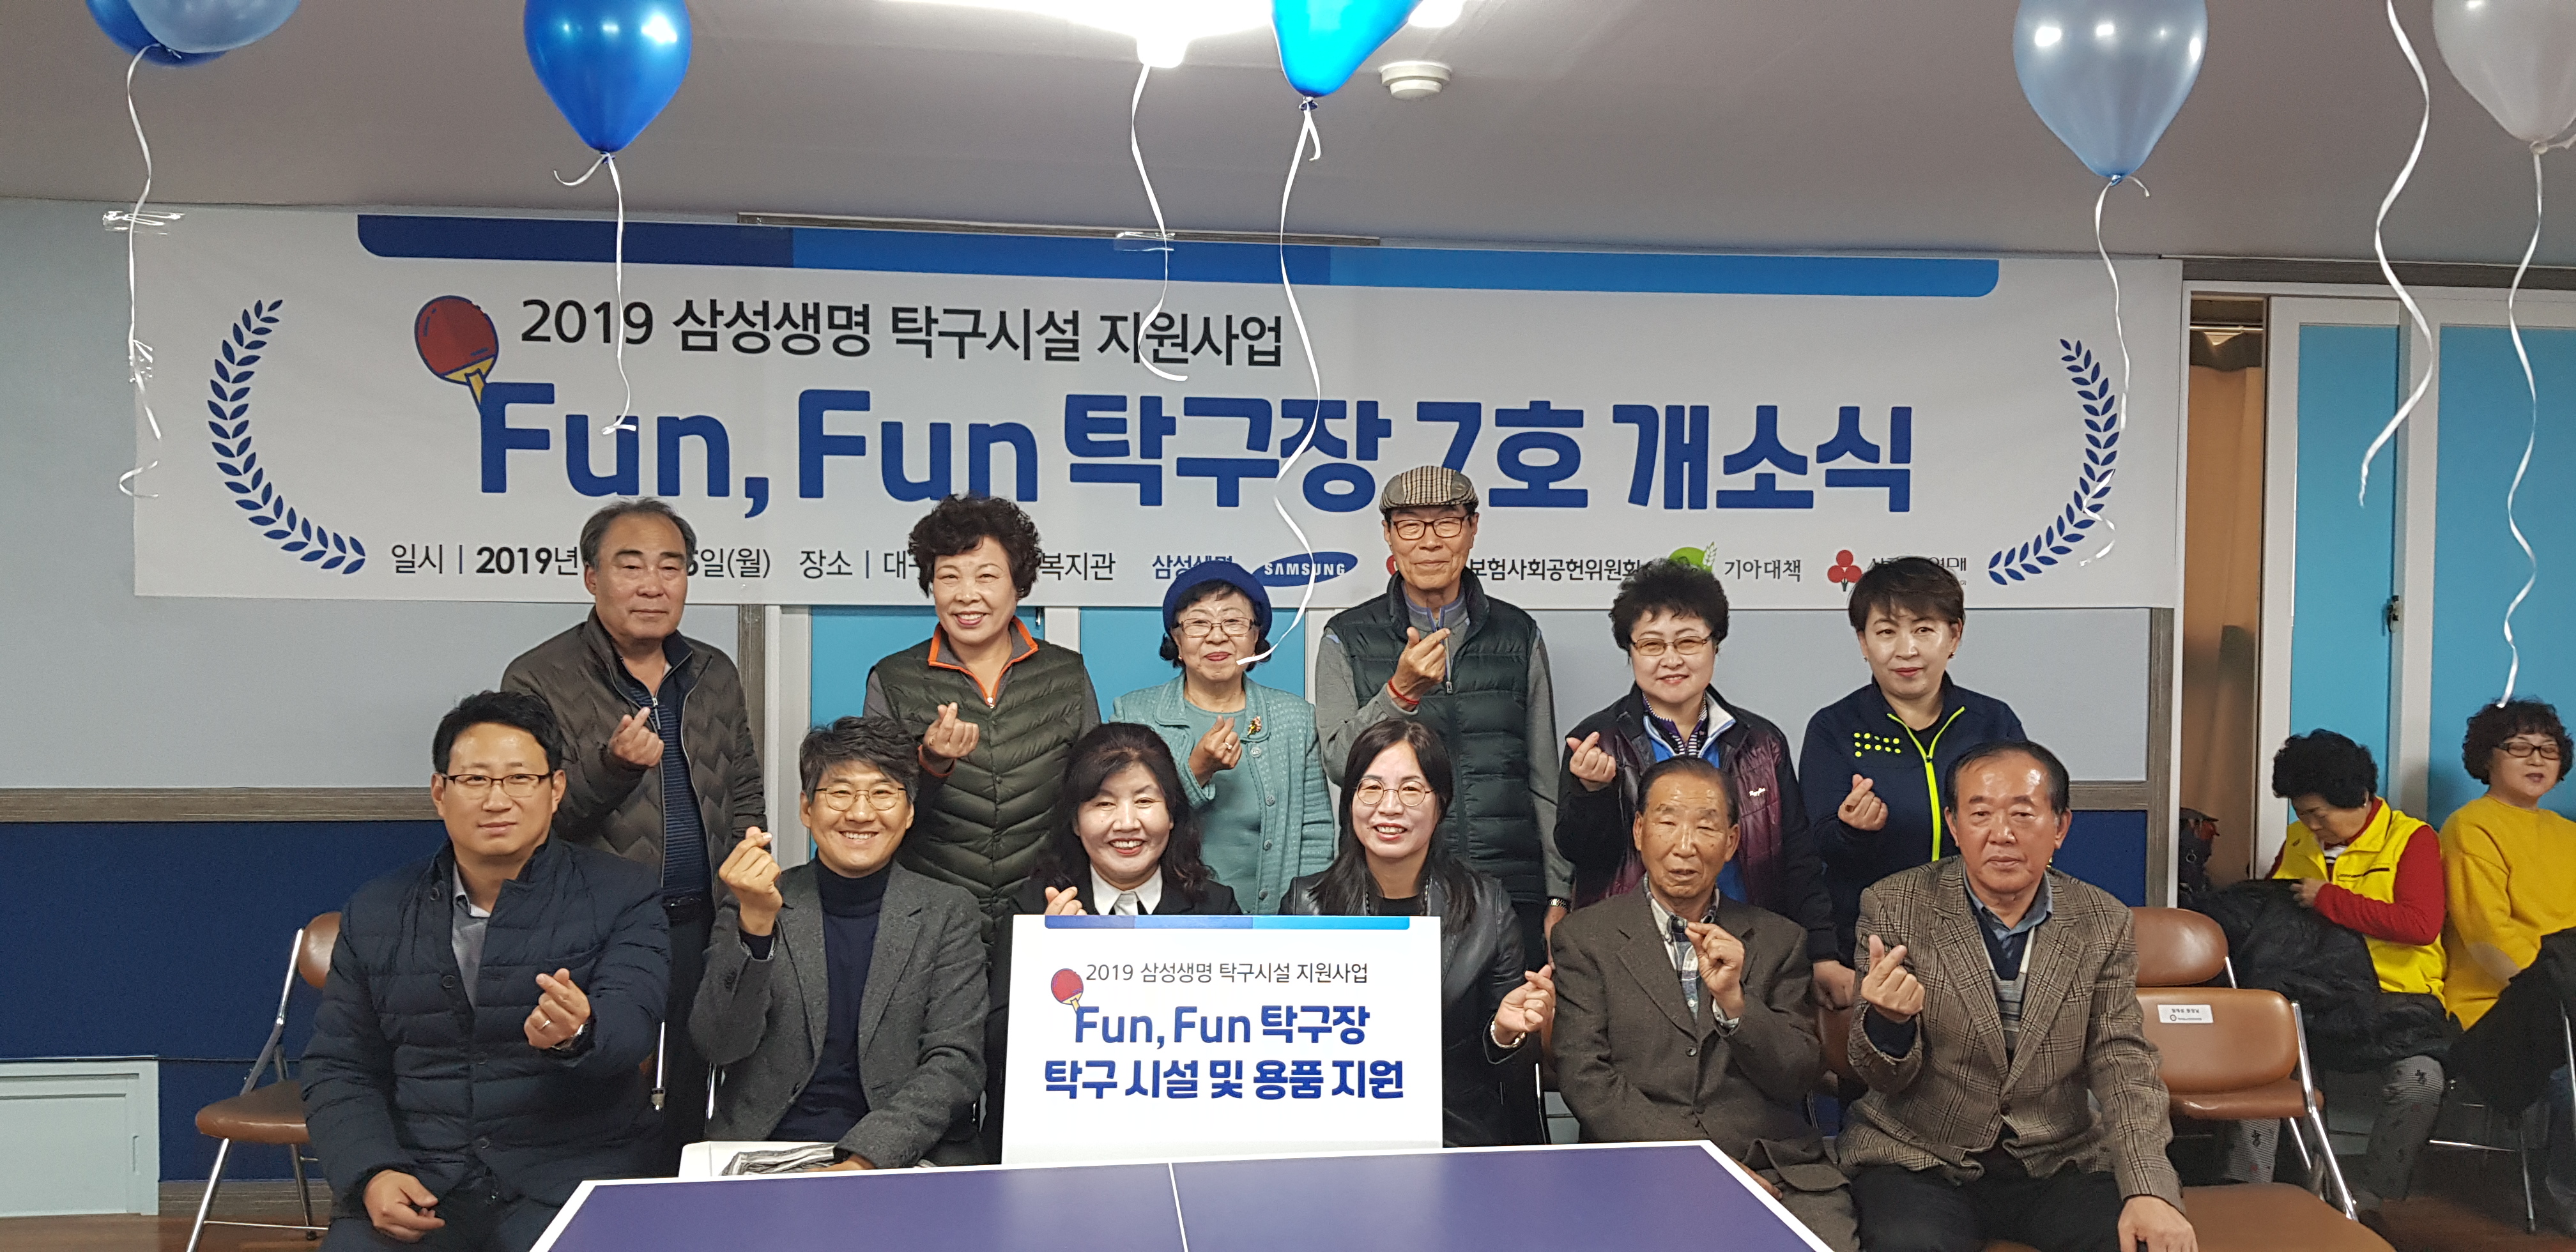 2019 삼성생명 탁구시설 지원사업 개소식 관련이미지 2